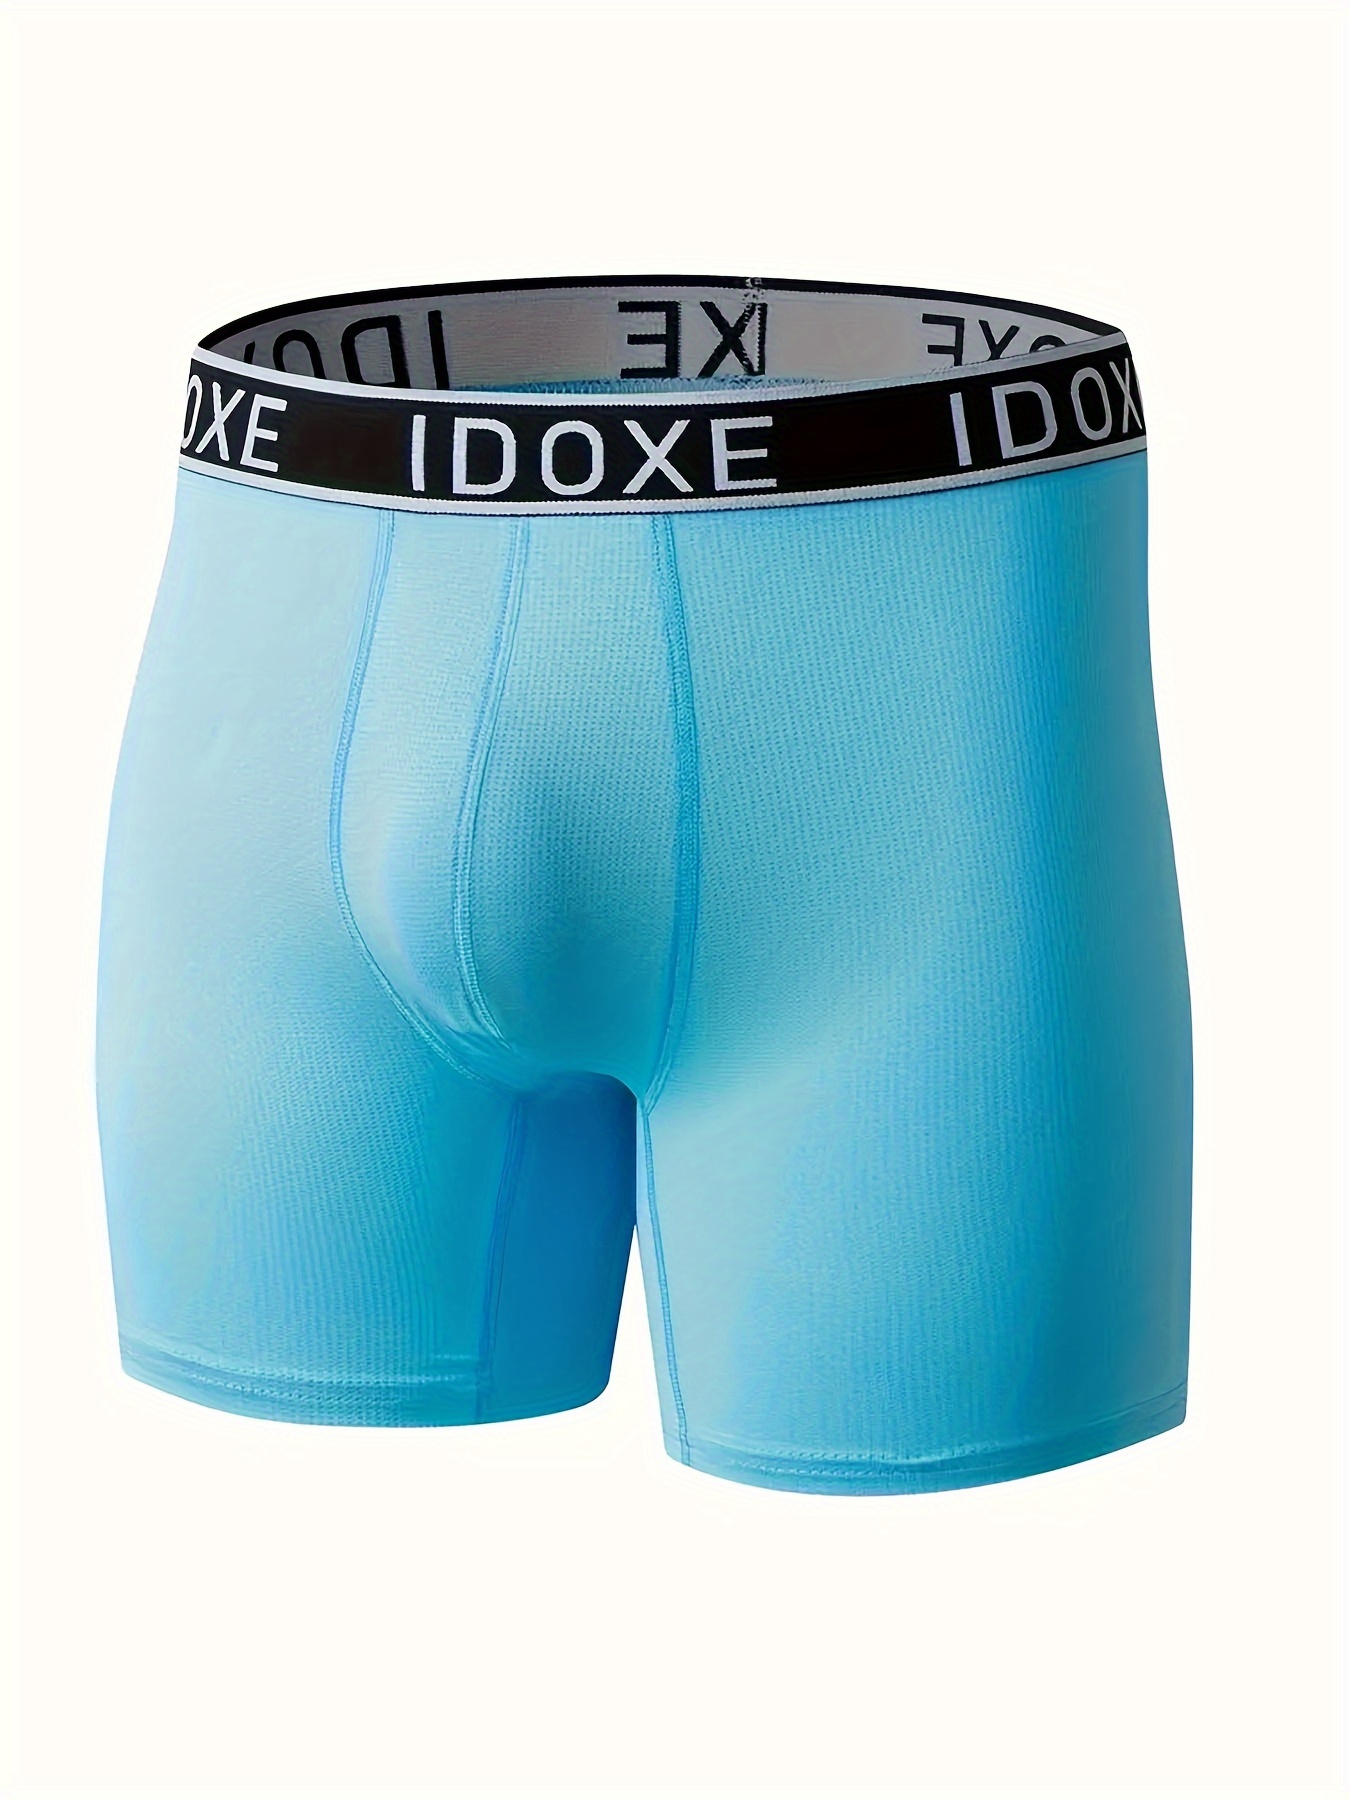 Soft 3x underwear For Comfort 